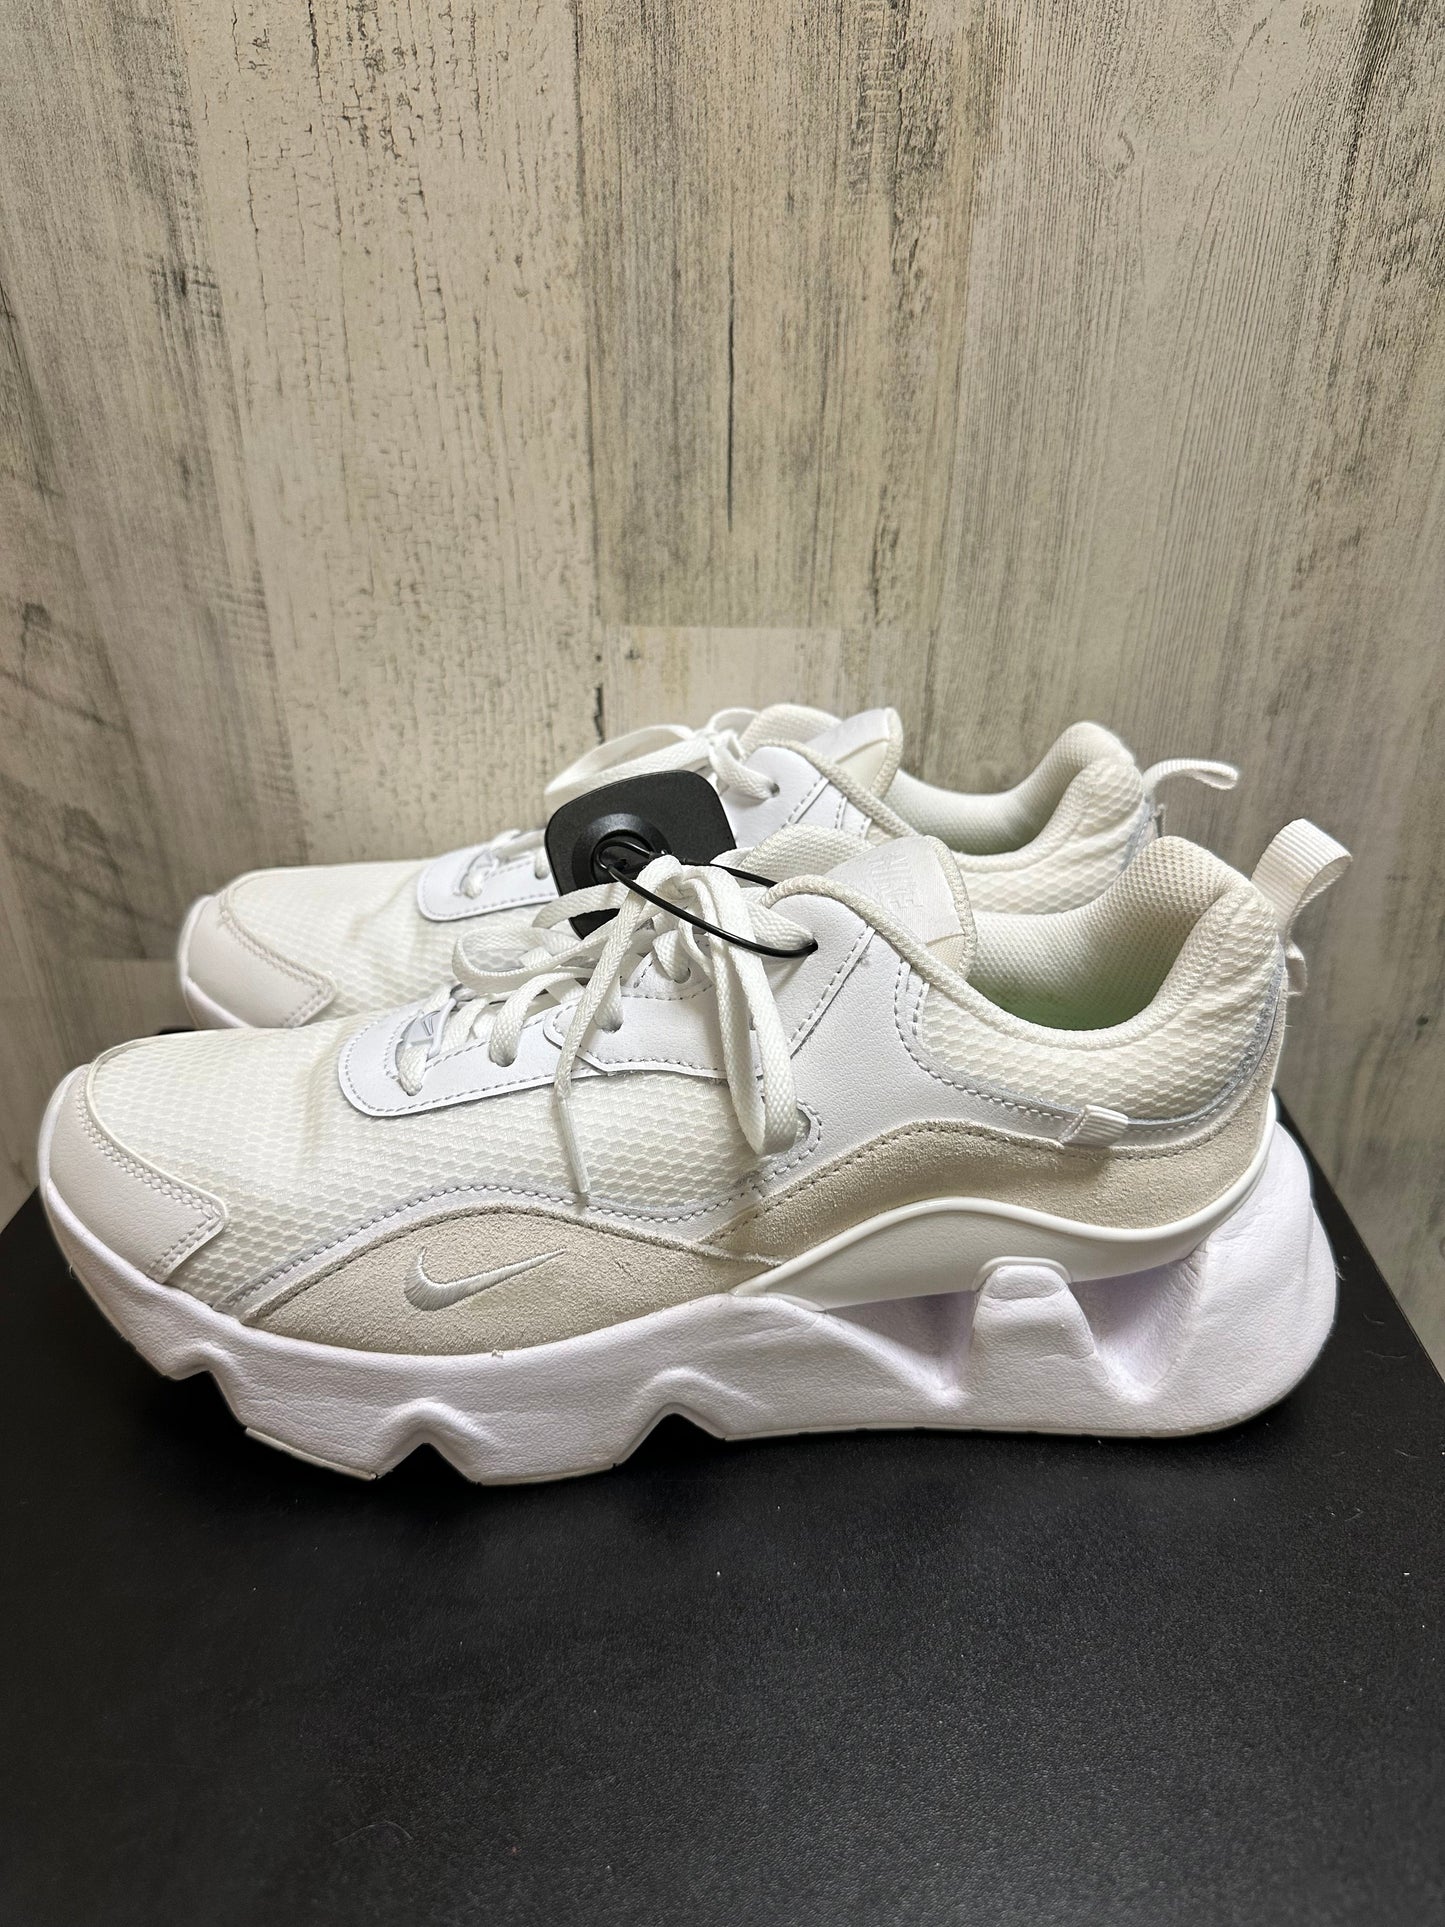 White Shoes Athletic Nike, Size 11.5